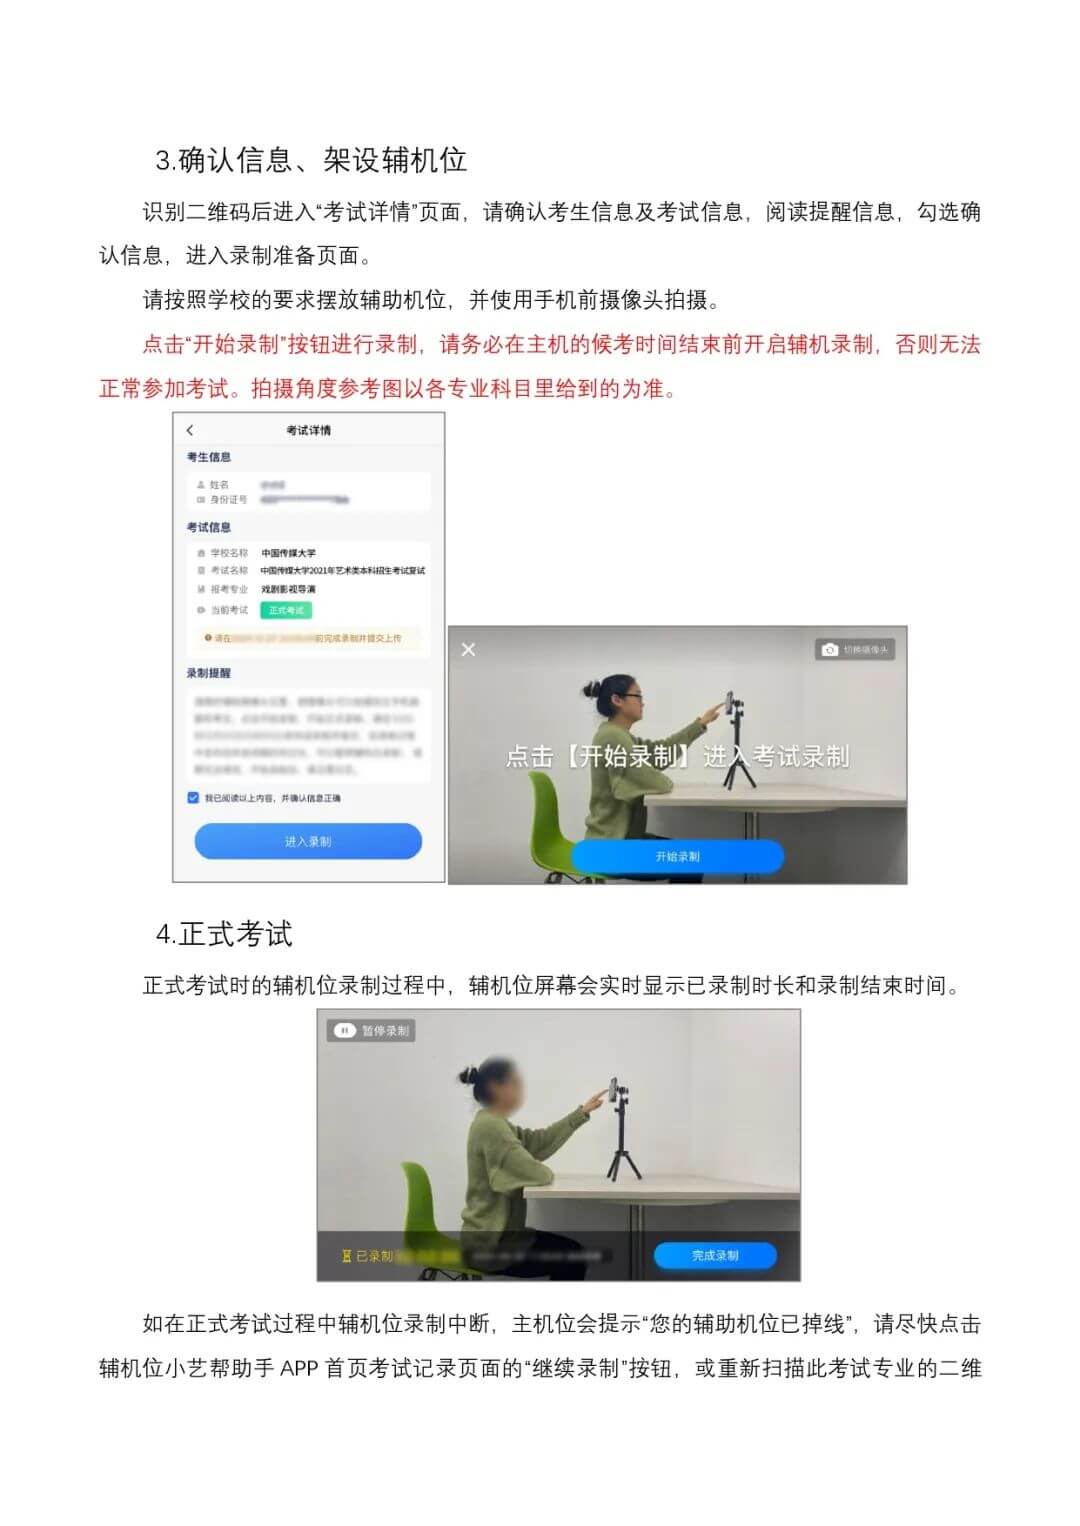 【李靖画室资讯站】中国传媒大学2021年艺术类本科招生考试复试考试须知